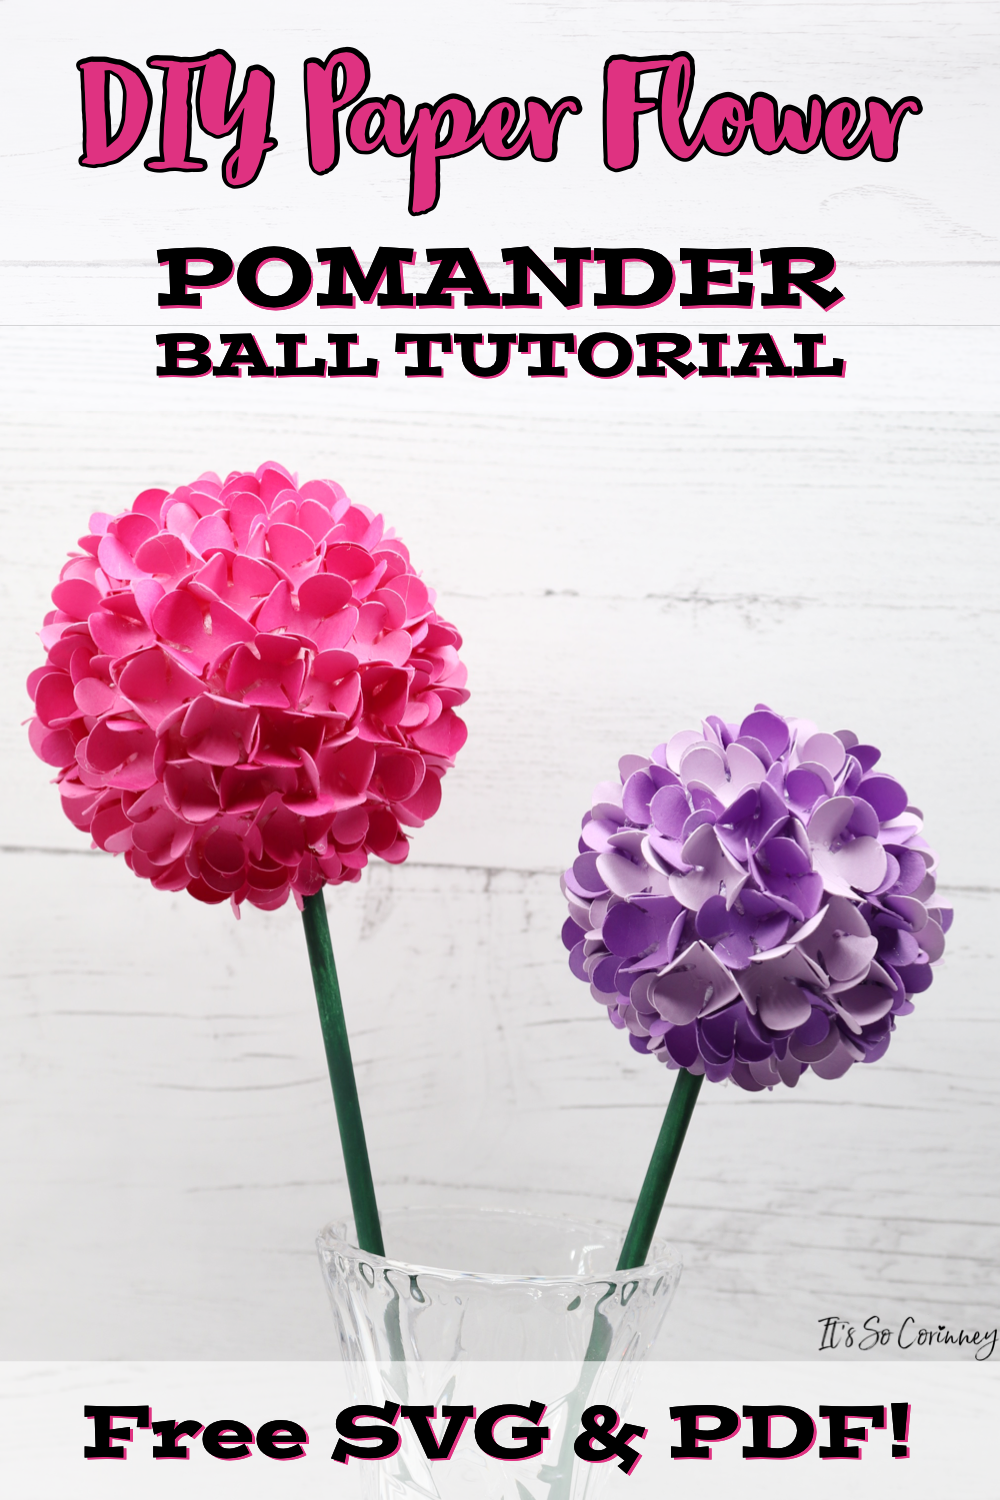 DIY Paper Flower Pomander Ball Tutorial